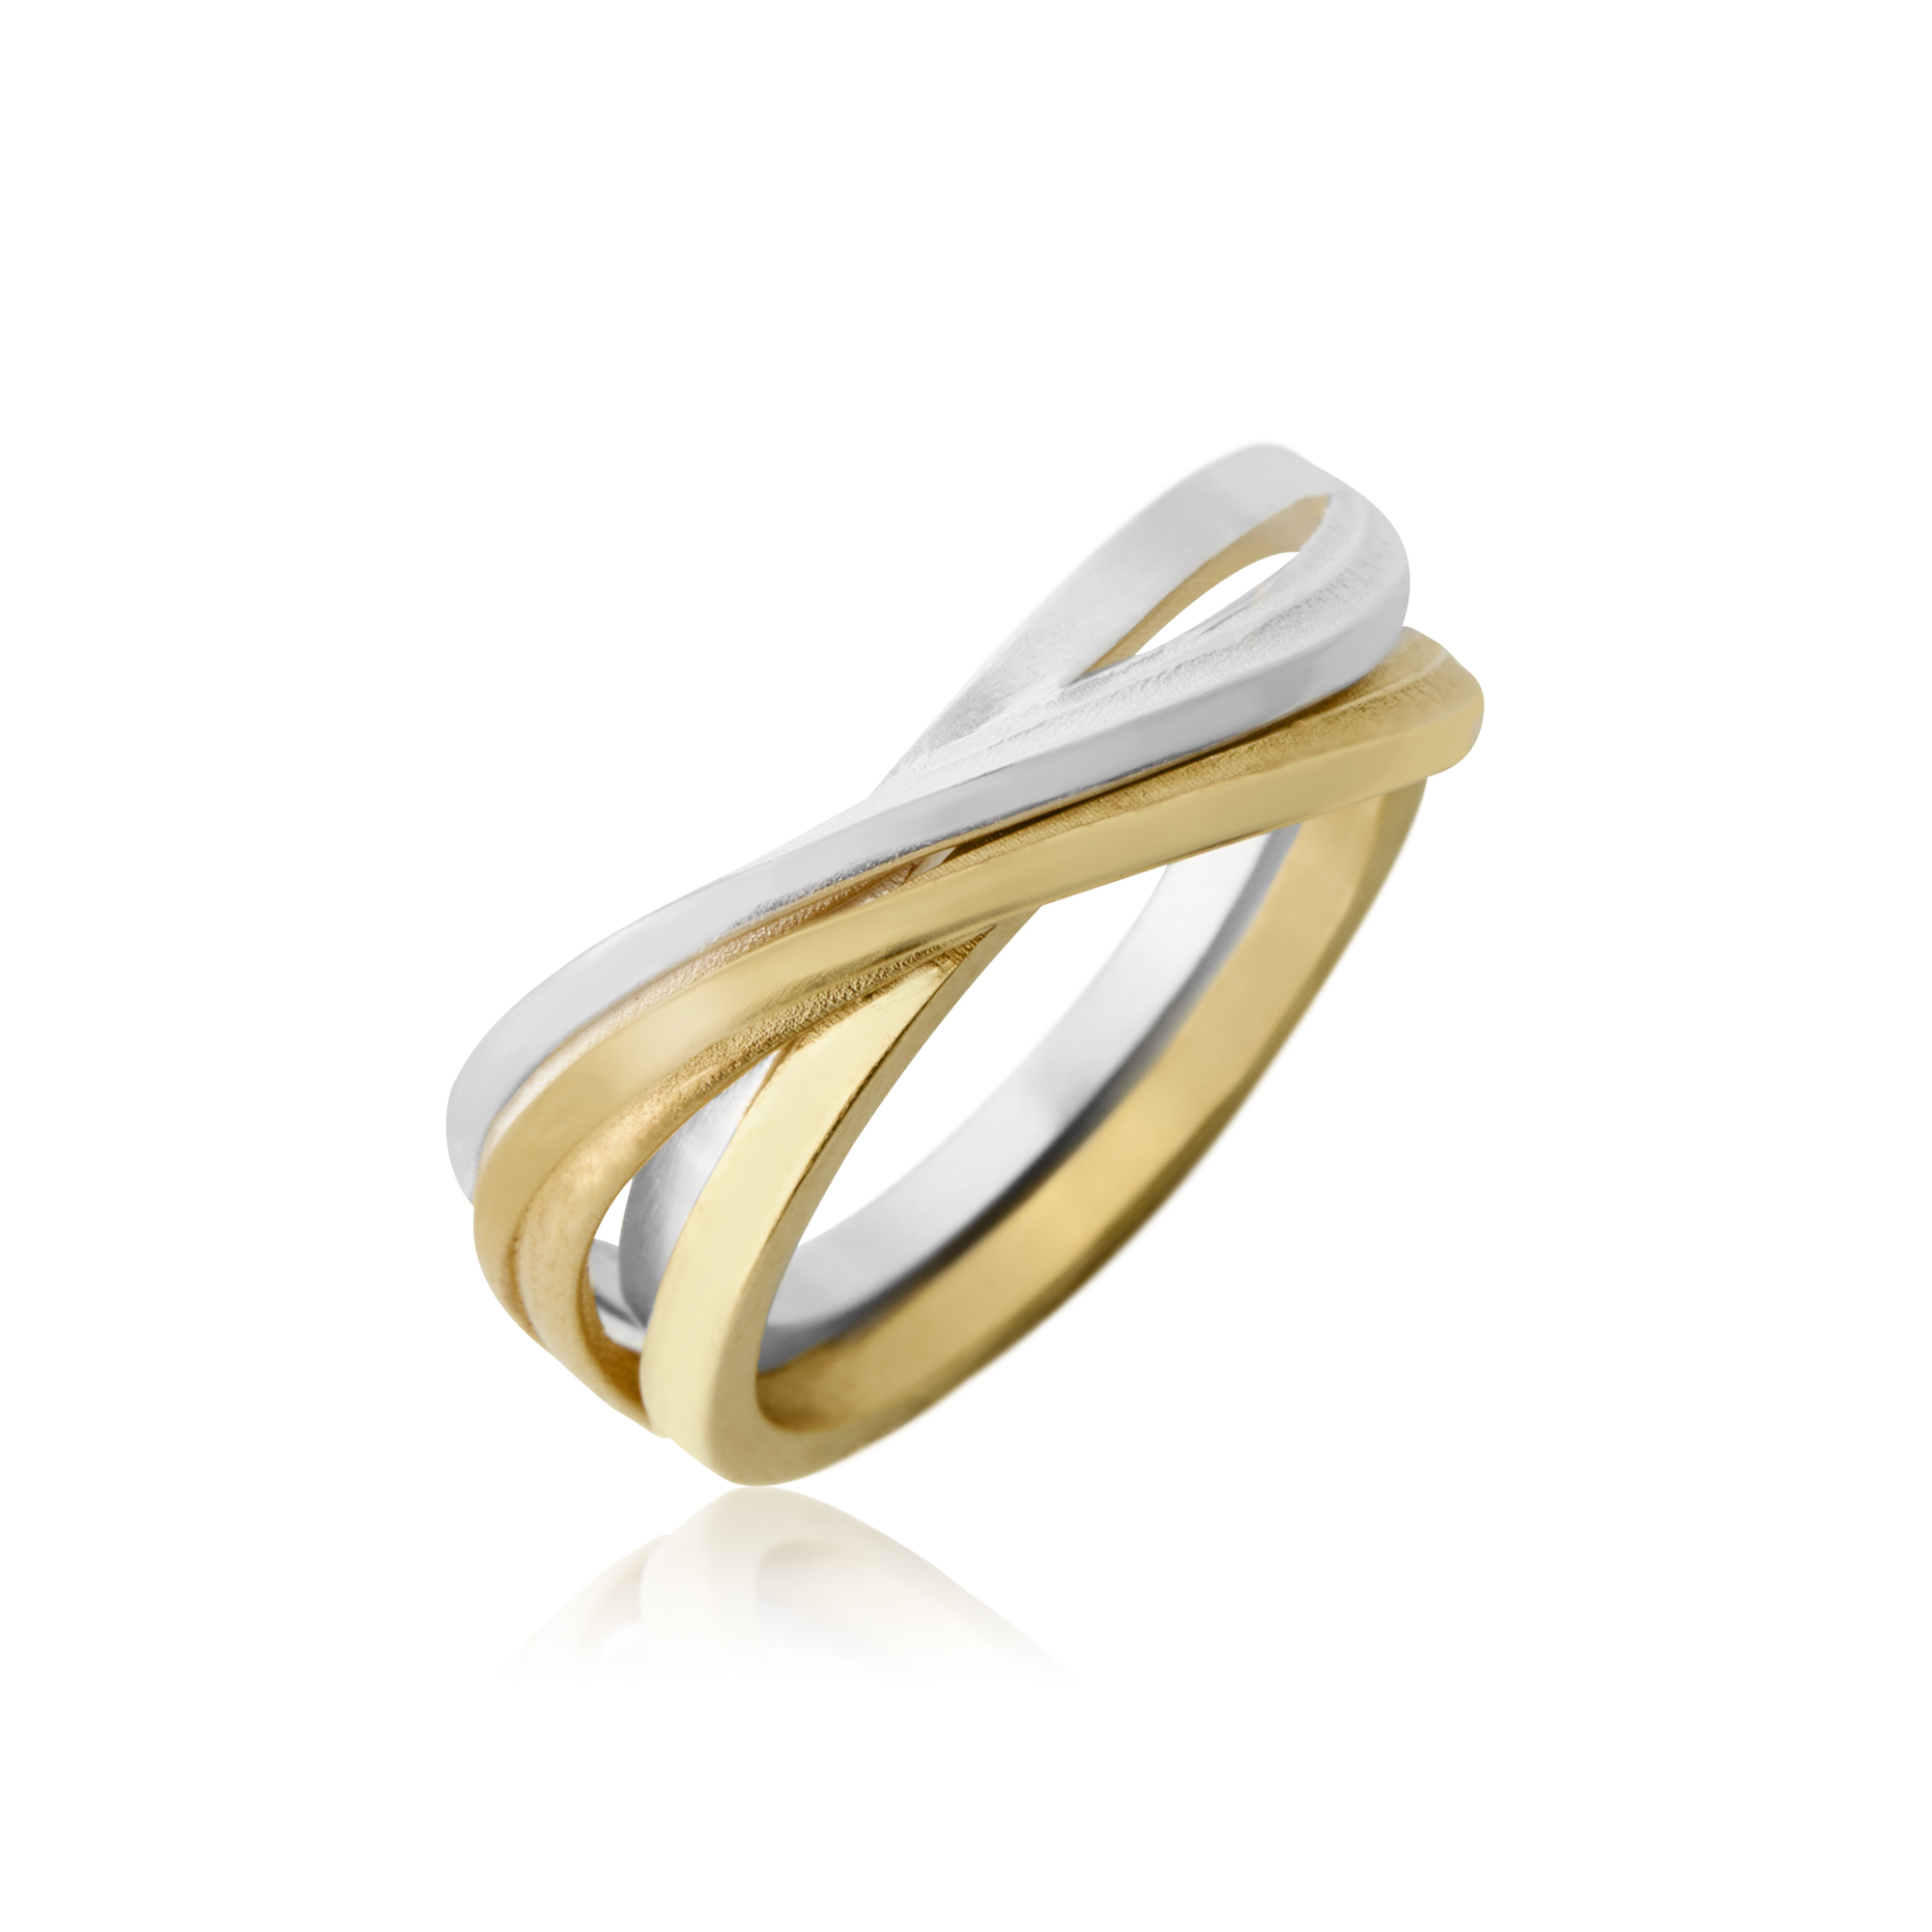 Delta silver ring